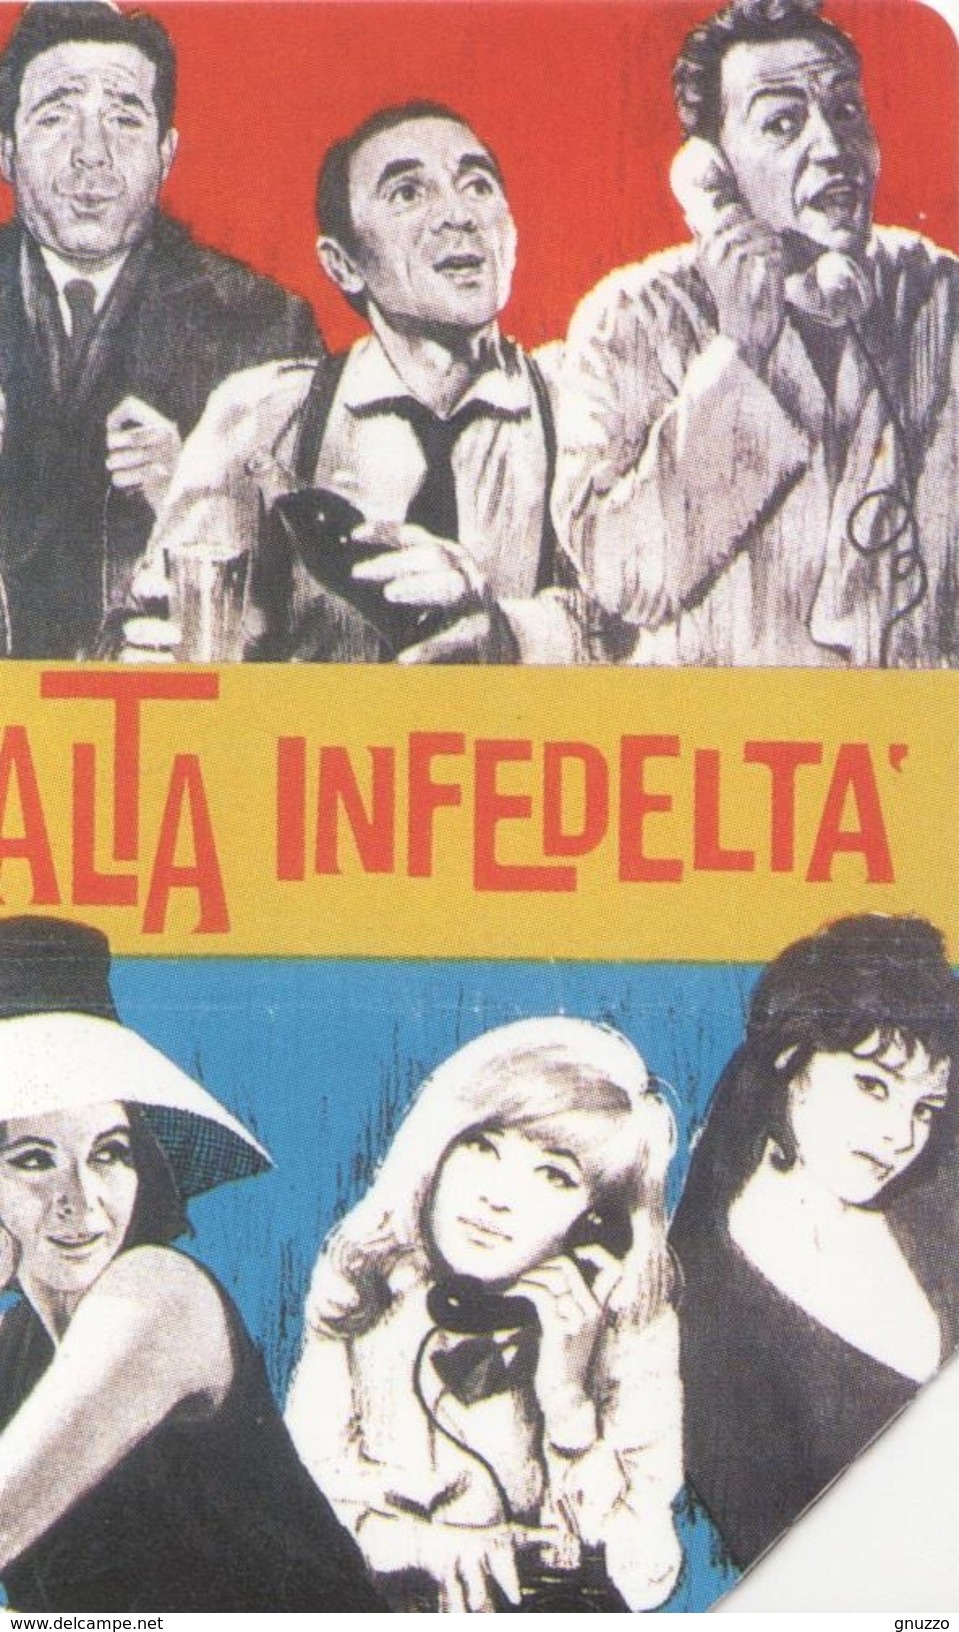 USATA- 1263- TELECOM ITALIA - IL TELEFONO E IL CINEMA- ALTA INFEDELTA ' - Pubbliche Figurate Ordinarie